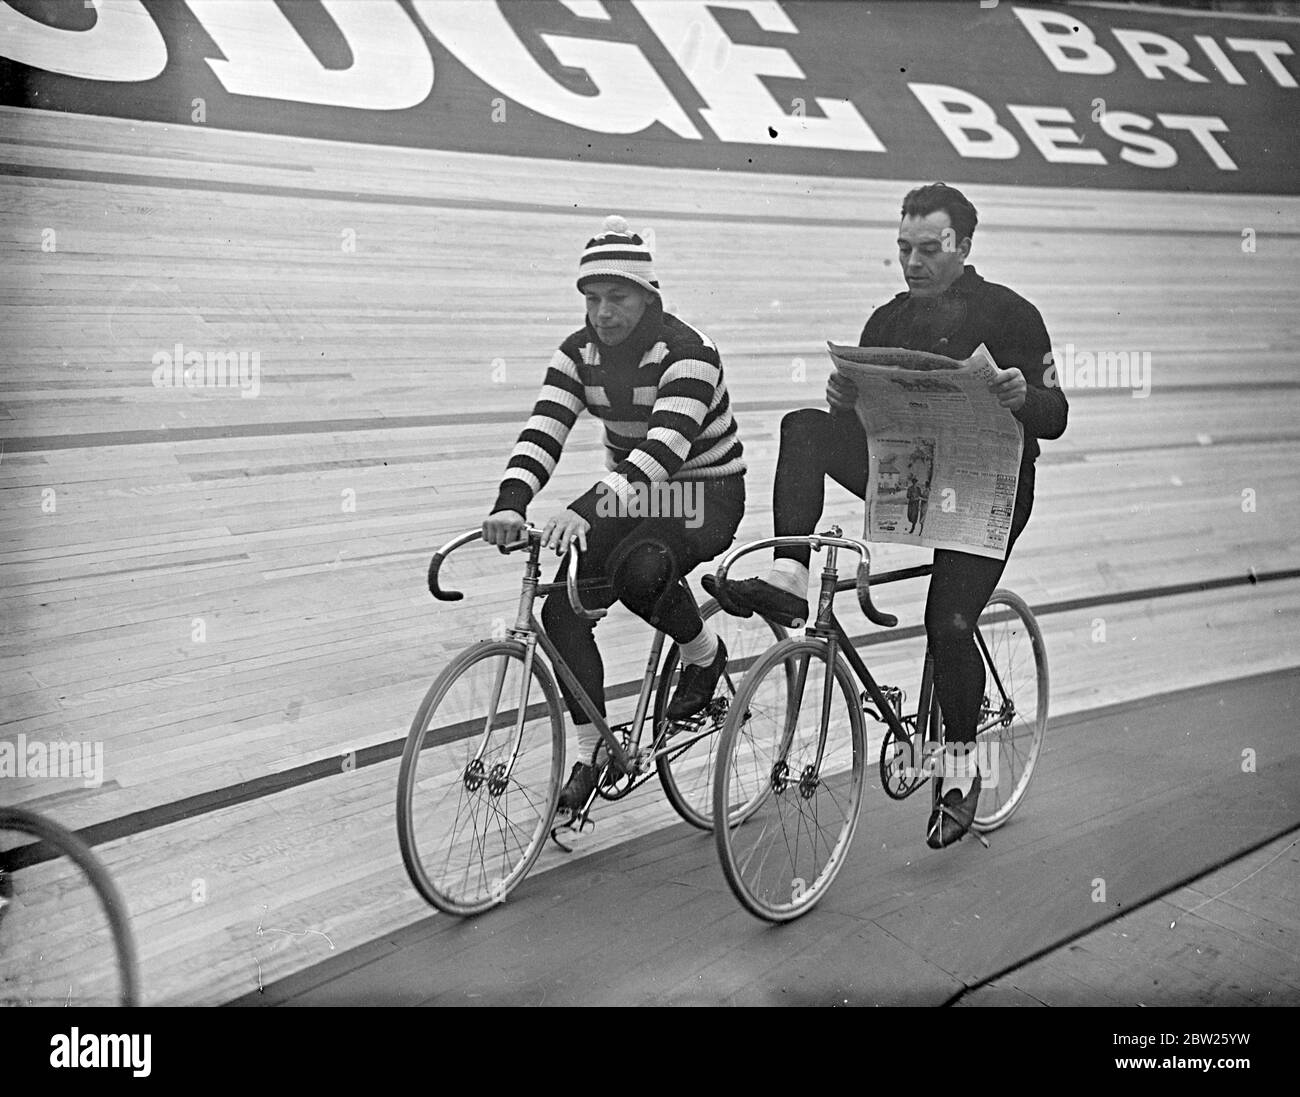 Lecture d'une roue en six jours de course à vélo à Wembley. La deuxième course de six jours est en cours à l'Empire, Pool, Wembley, après avoir commencé quelques minutes après minuit. Photos, Piet Van Kempen (Hollande) lisant un journal en parcourant la piste. Michel Pecqueux (France) en jersey rayé est à côté. 2 mai 1938 Banque D'Images